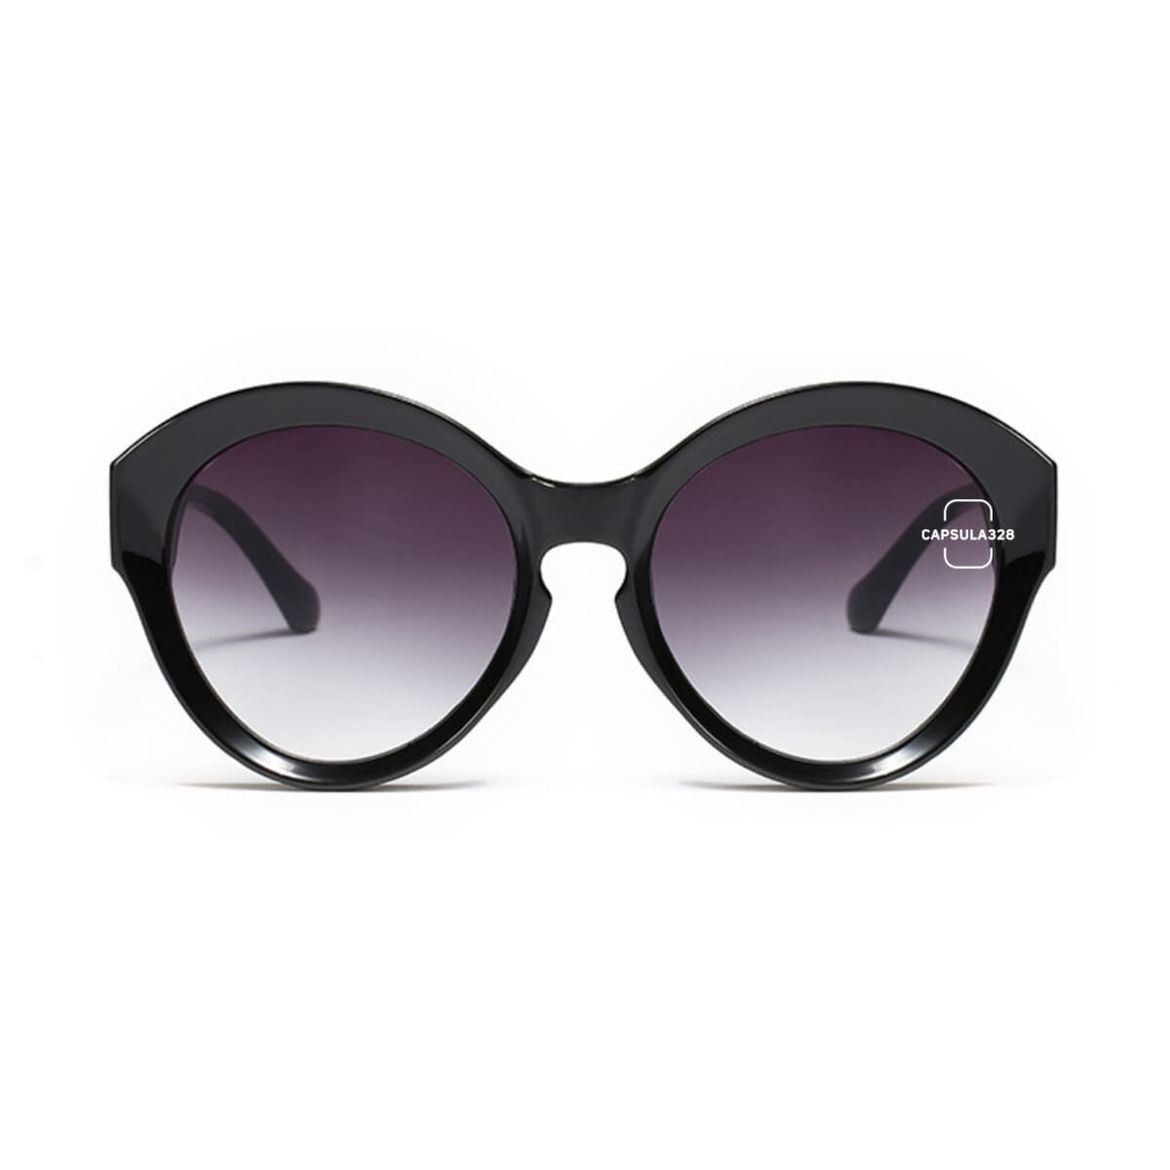 Солнцезащитные очки  Luxury 2481